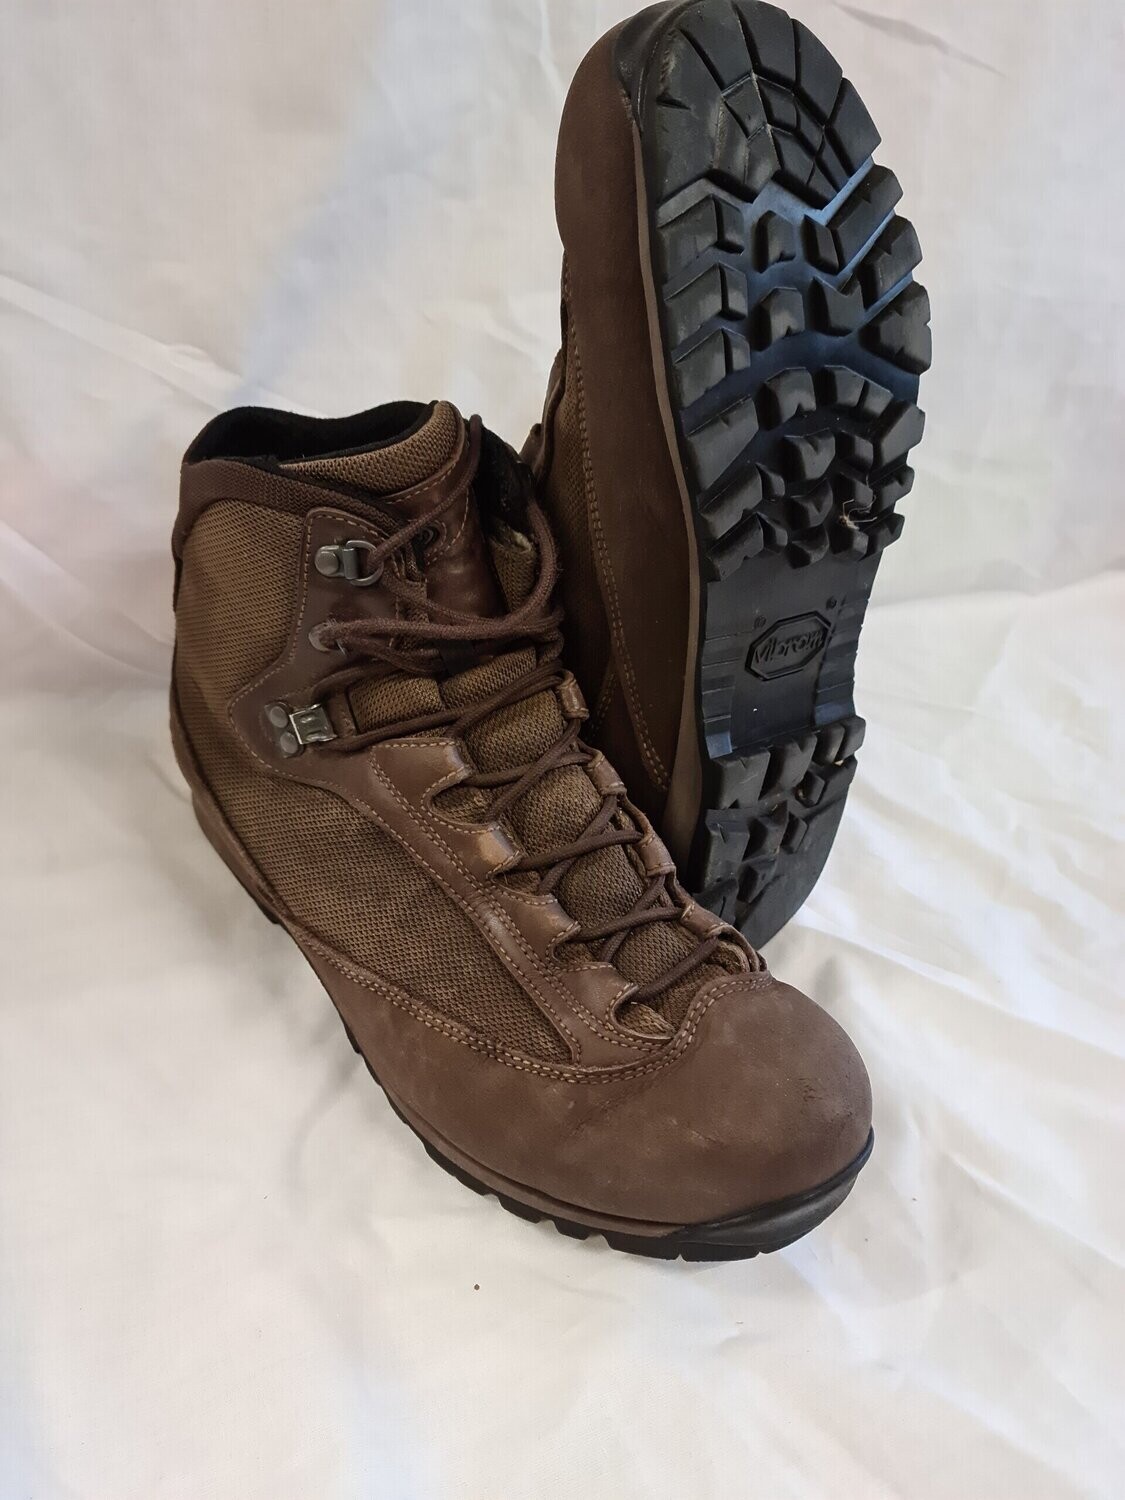 AKU Combat High Liability Boots, Size: Size 8M